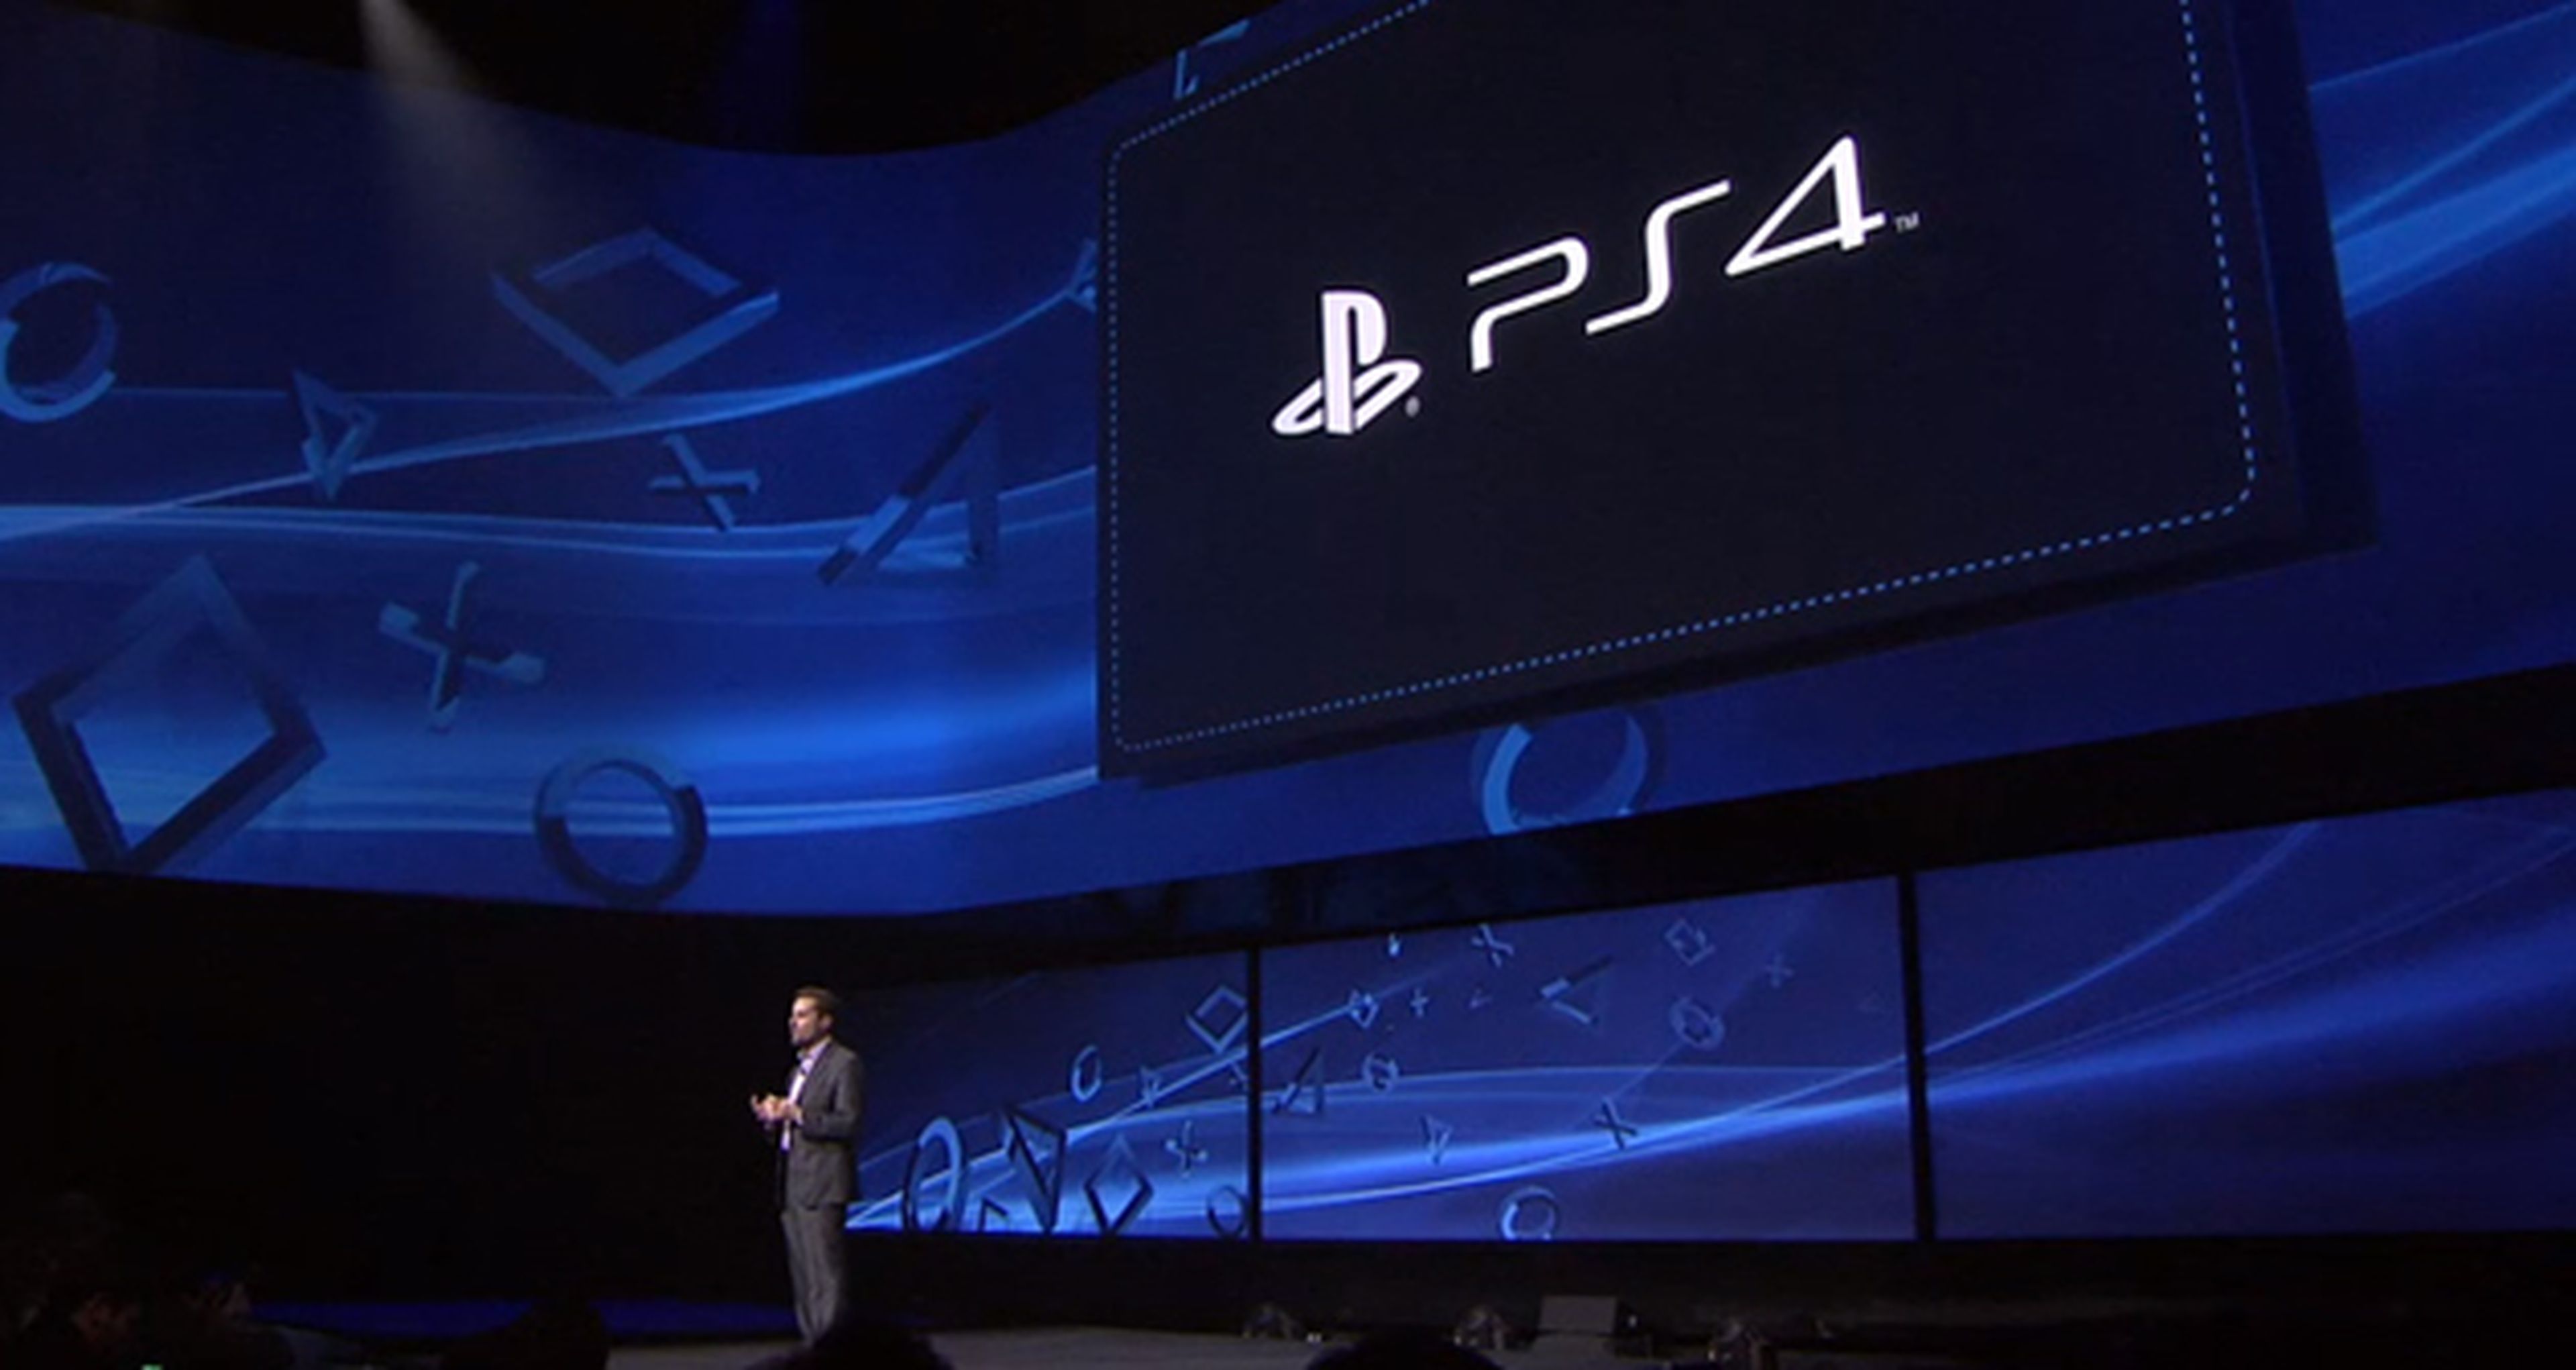 PS4 anunciada oficialmente por Sony